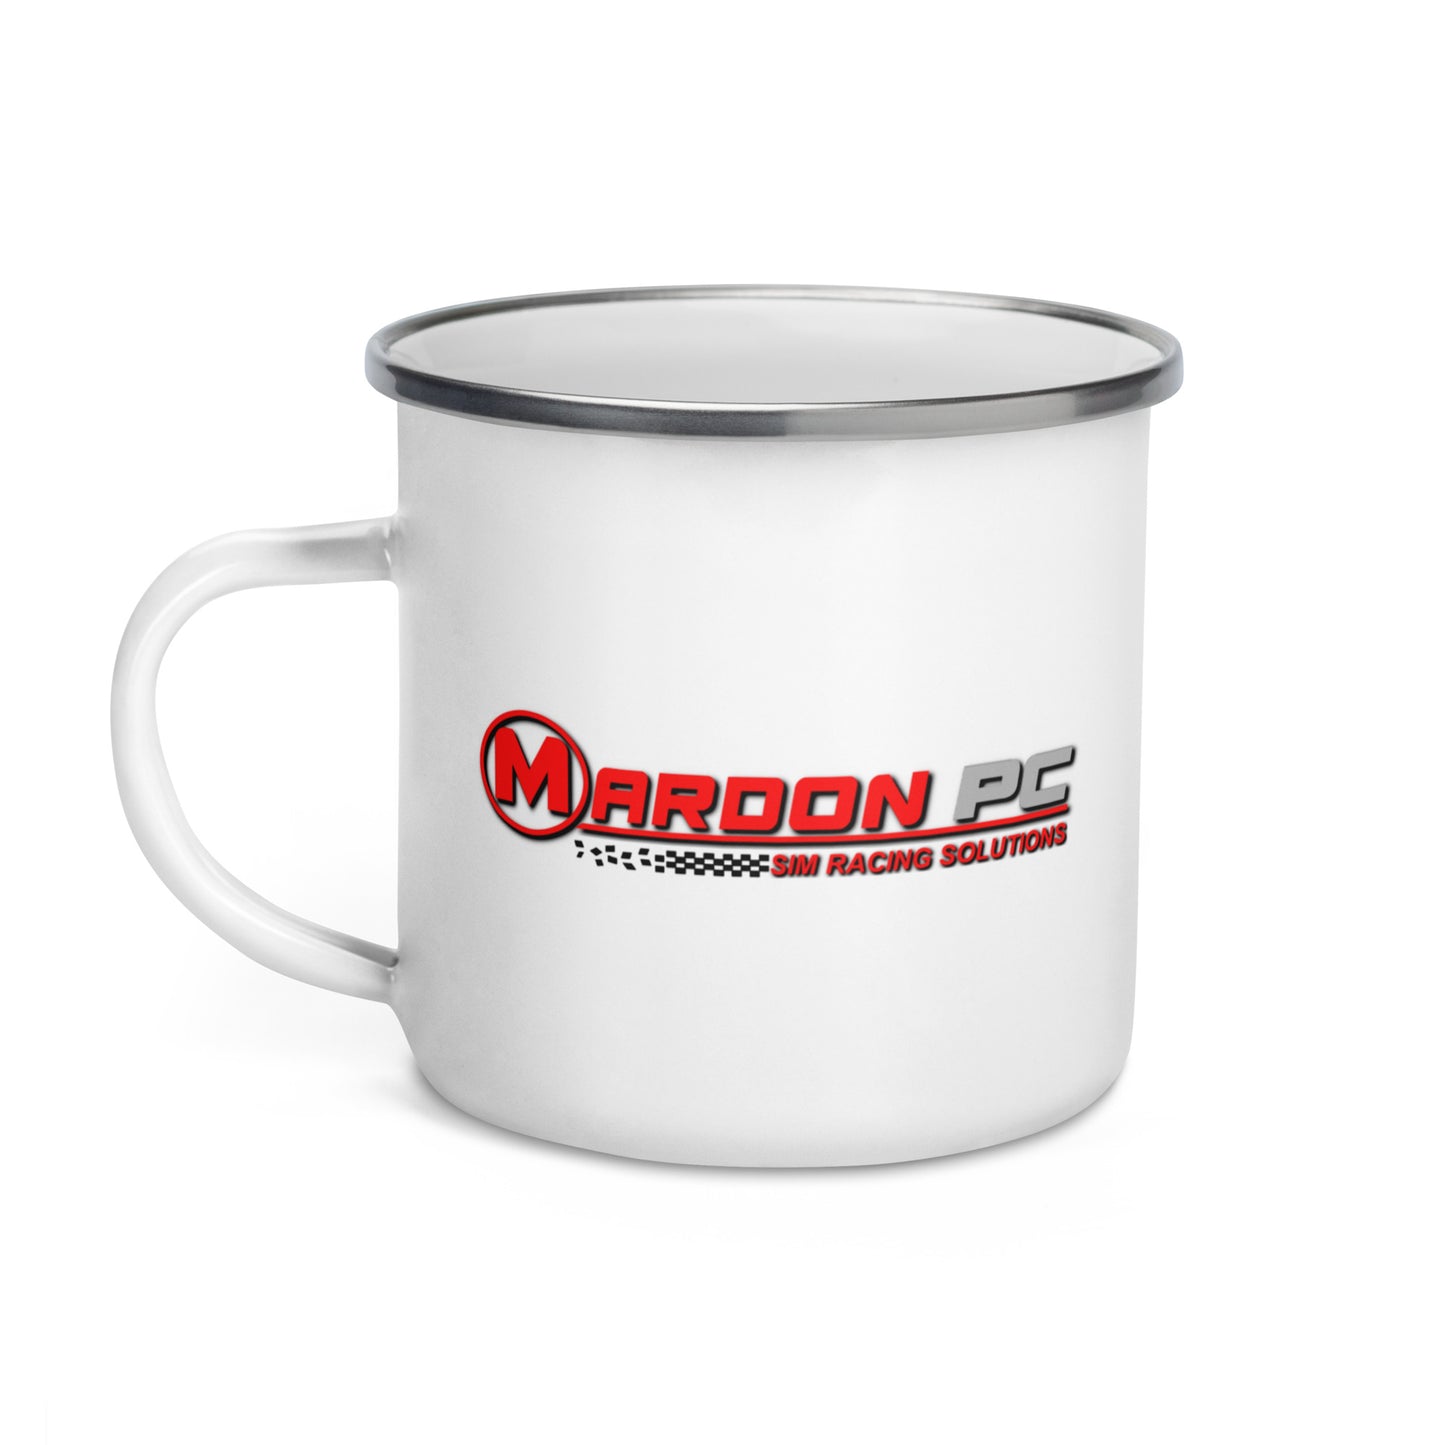 MARDON/MOZA Enamel Mug